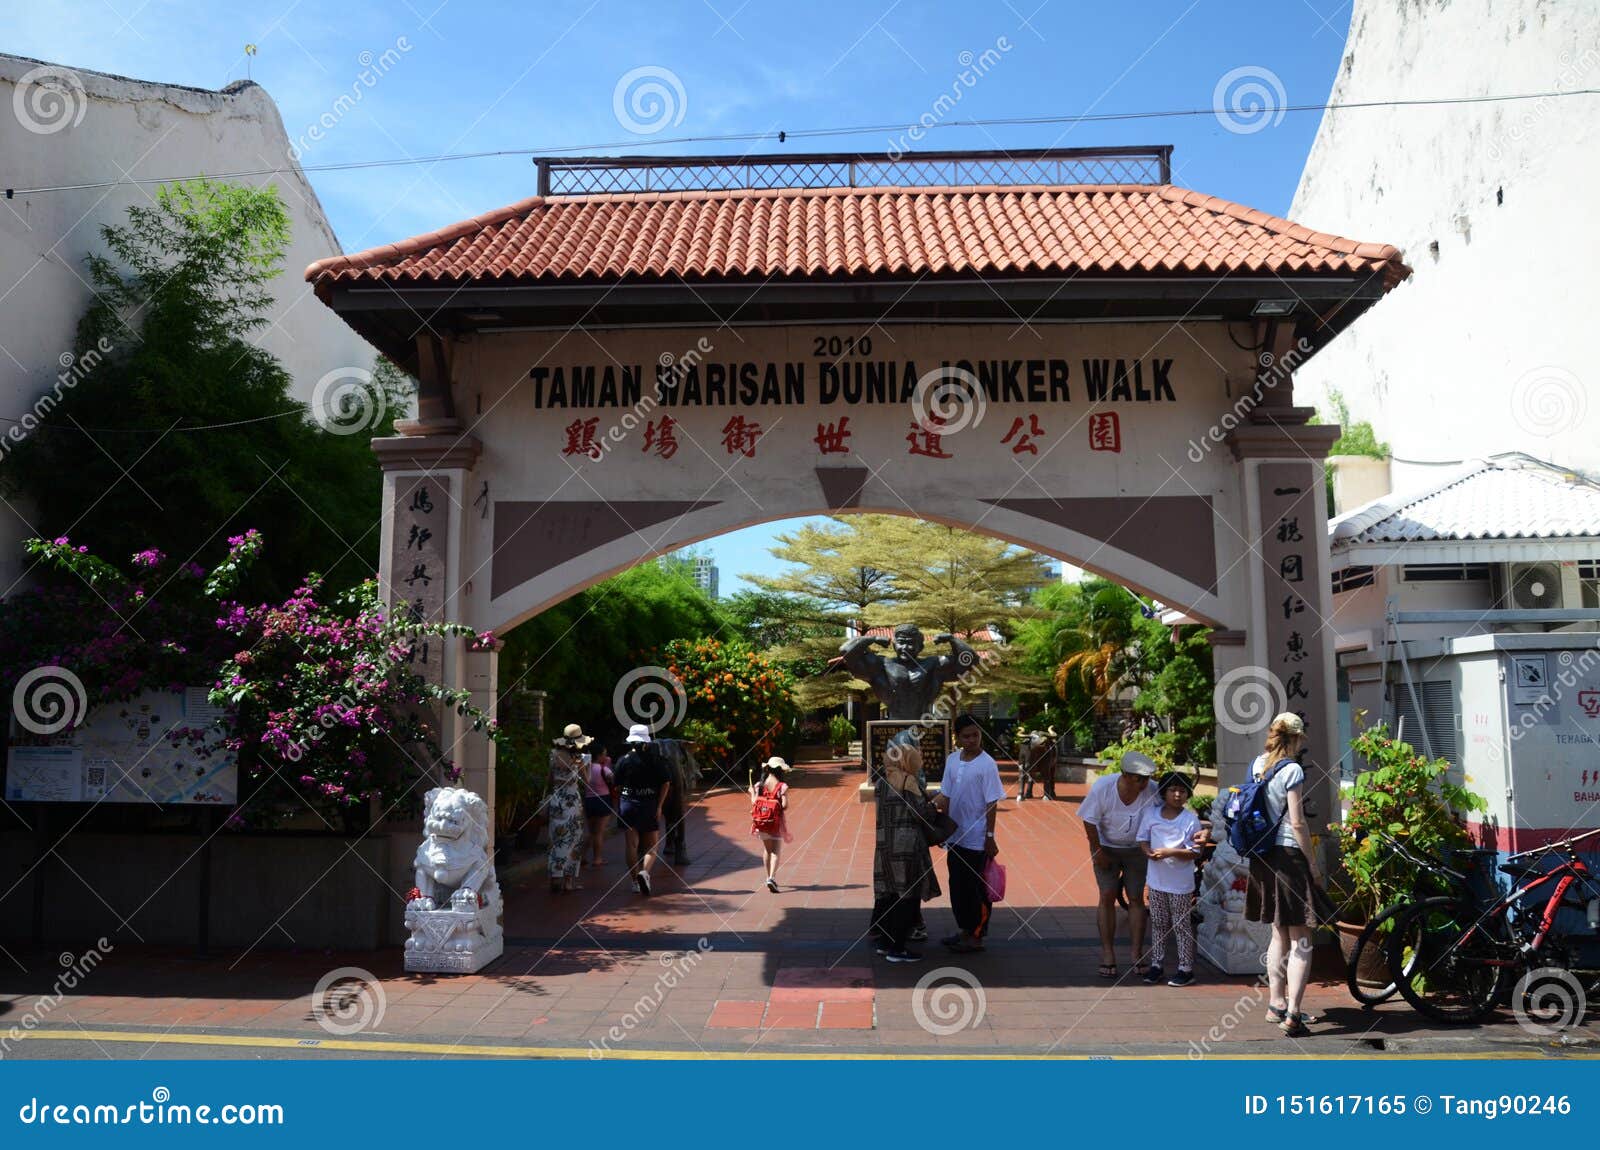 Melaka Jonker Walk Park - Nehru Memorial